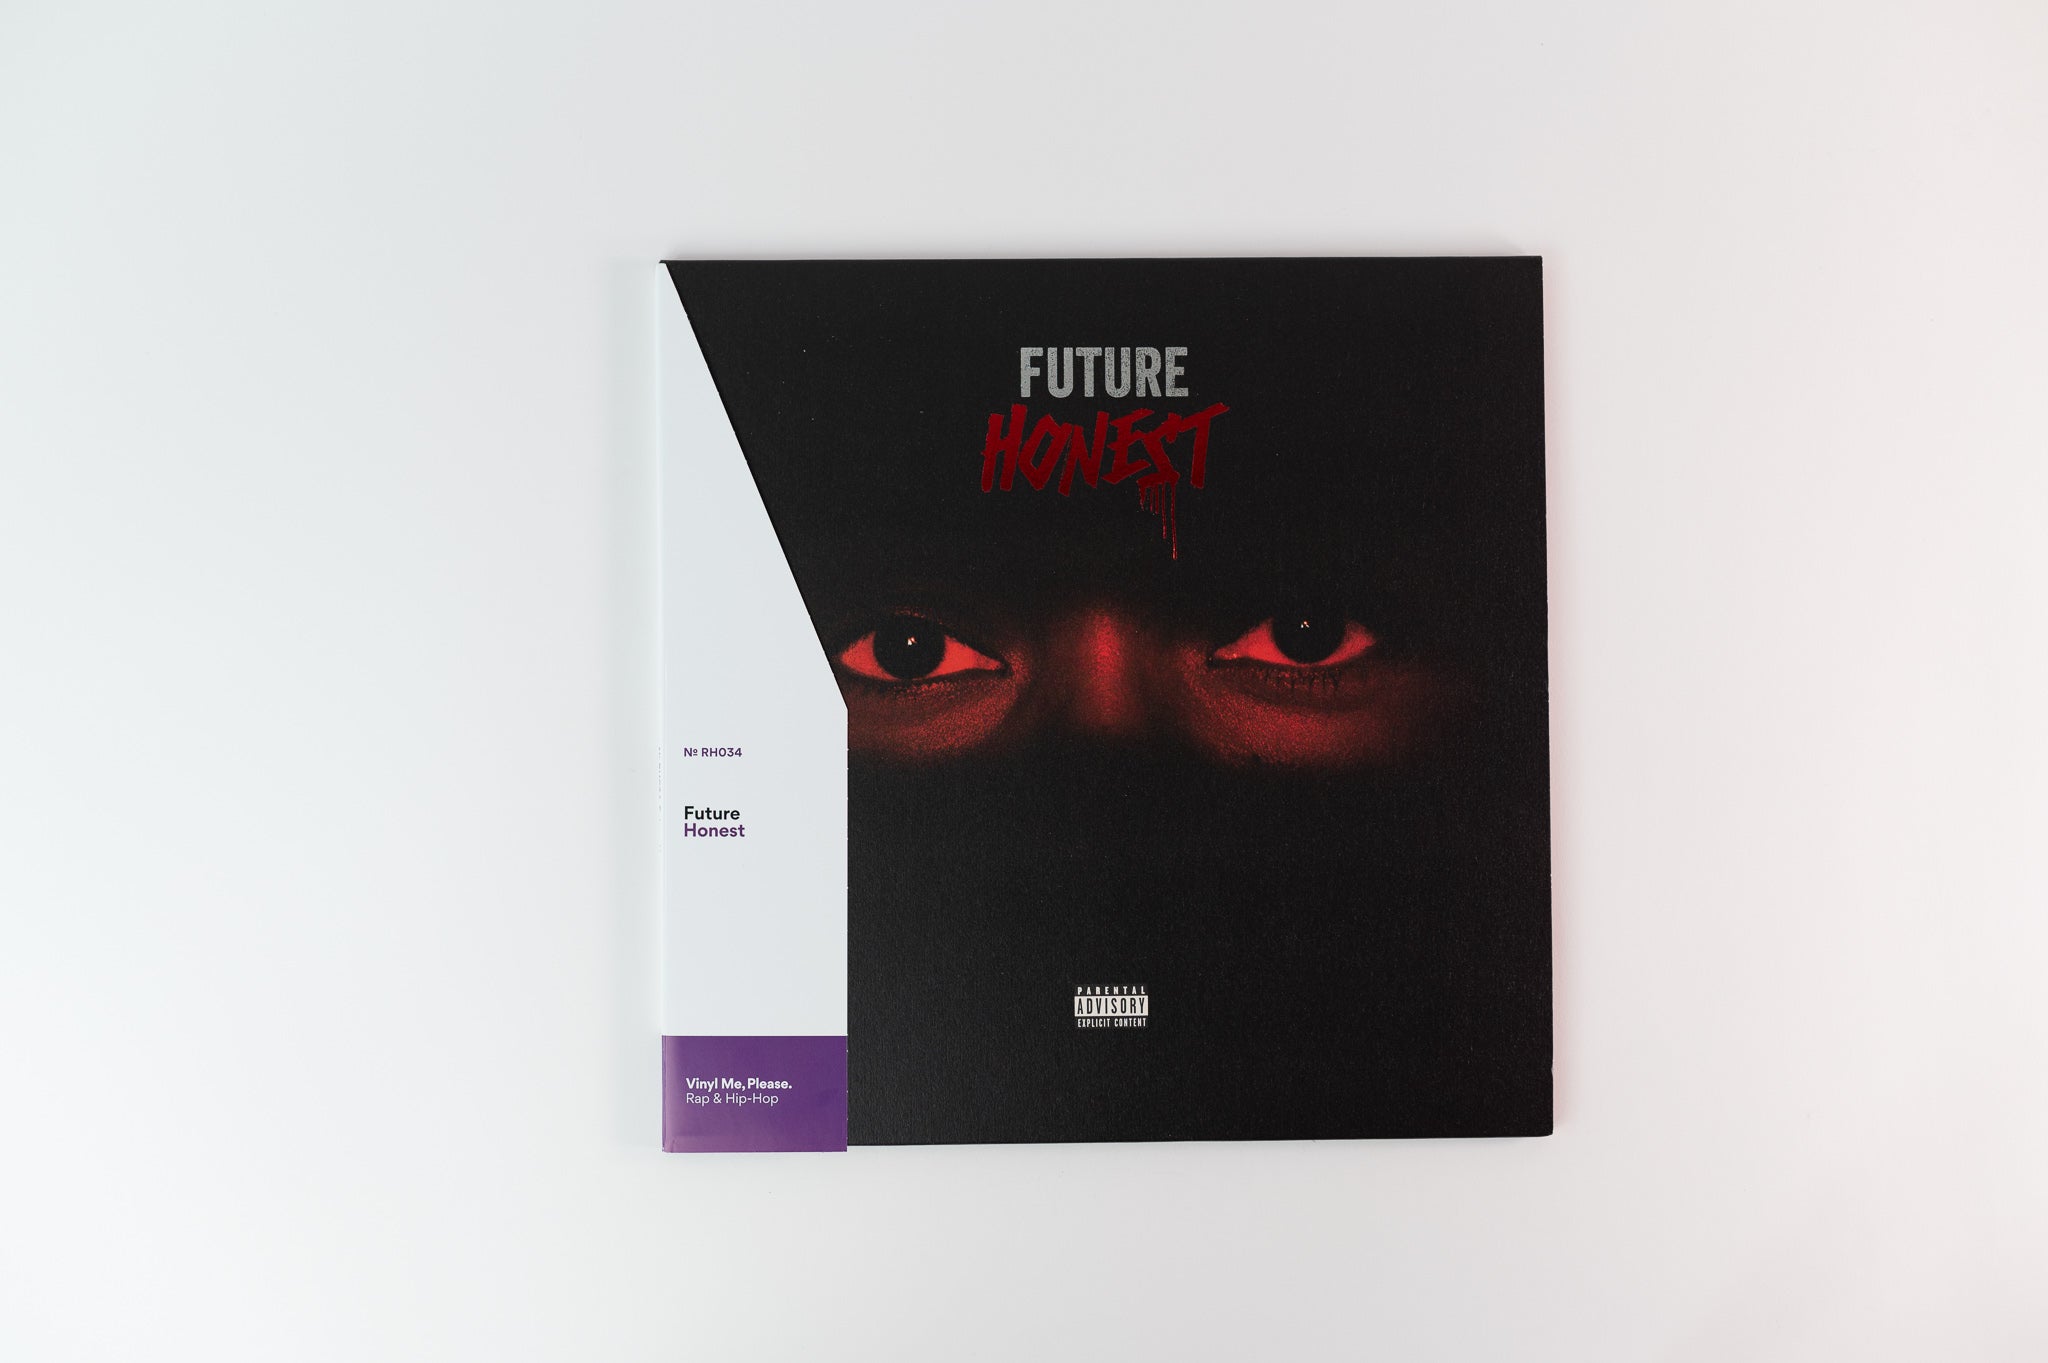 Future - Honest on Legacy Vinyl Me Please Limited Reissue Black White & Red Splatter